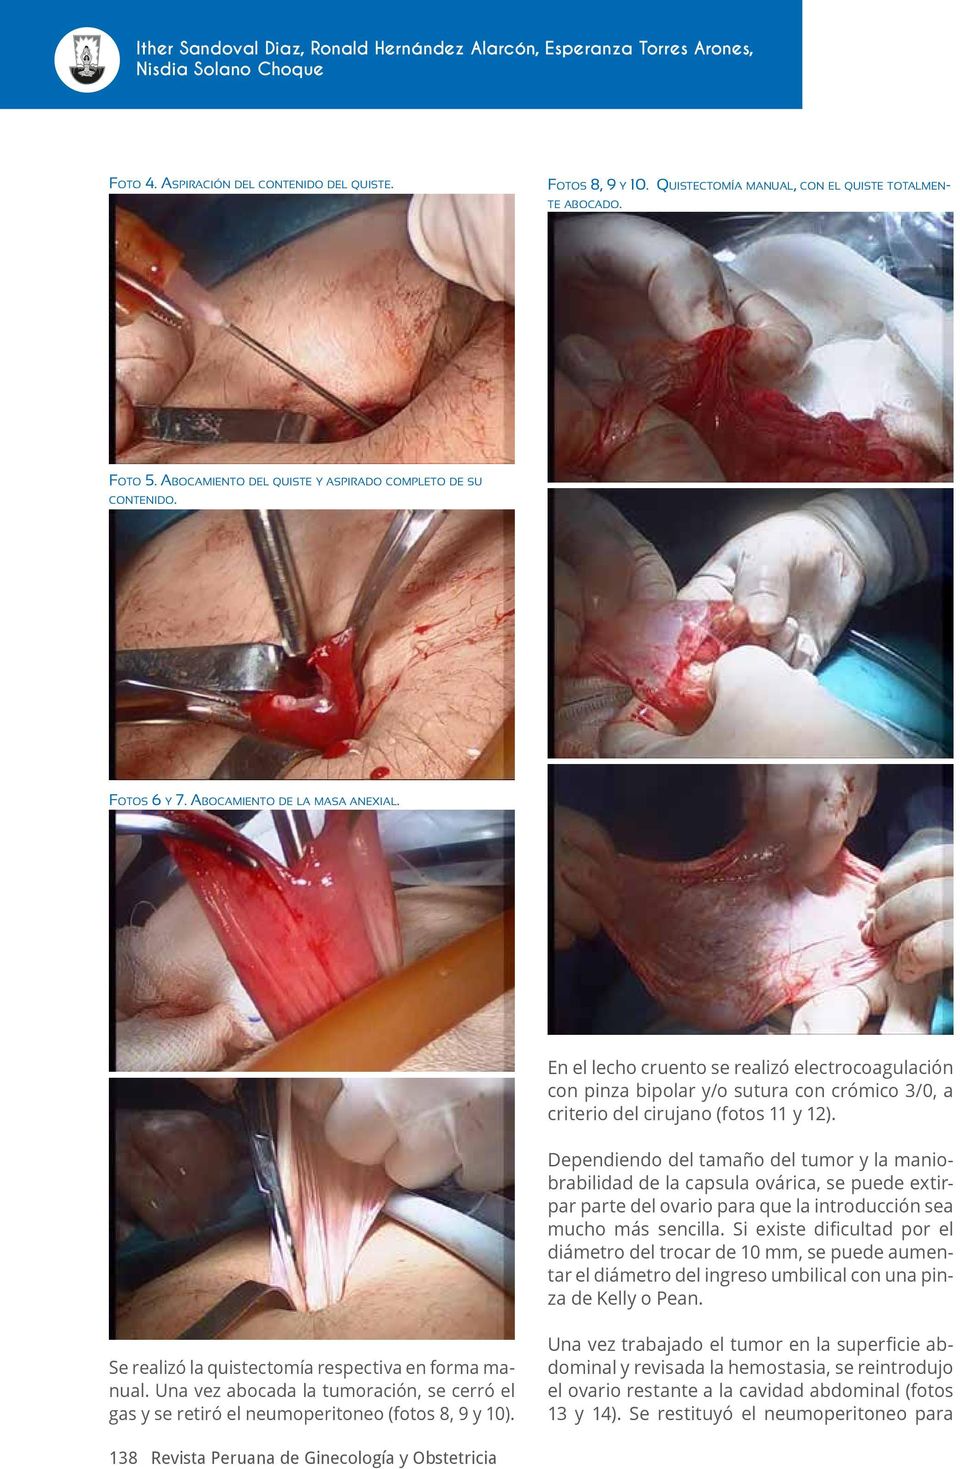 En el lecho cruento se realizó electrocoagulación con pinza bipolar y/o sutura con crómico 3/0, a criterio del cirujano (fotos 11 y 12).